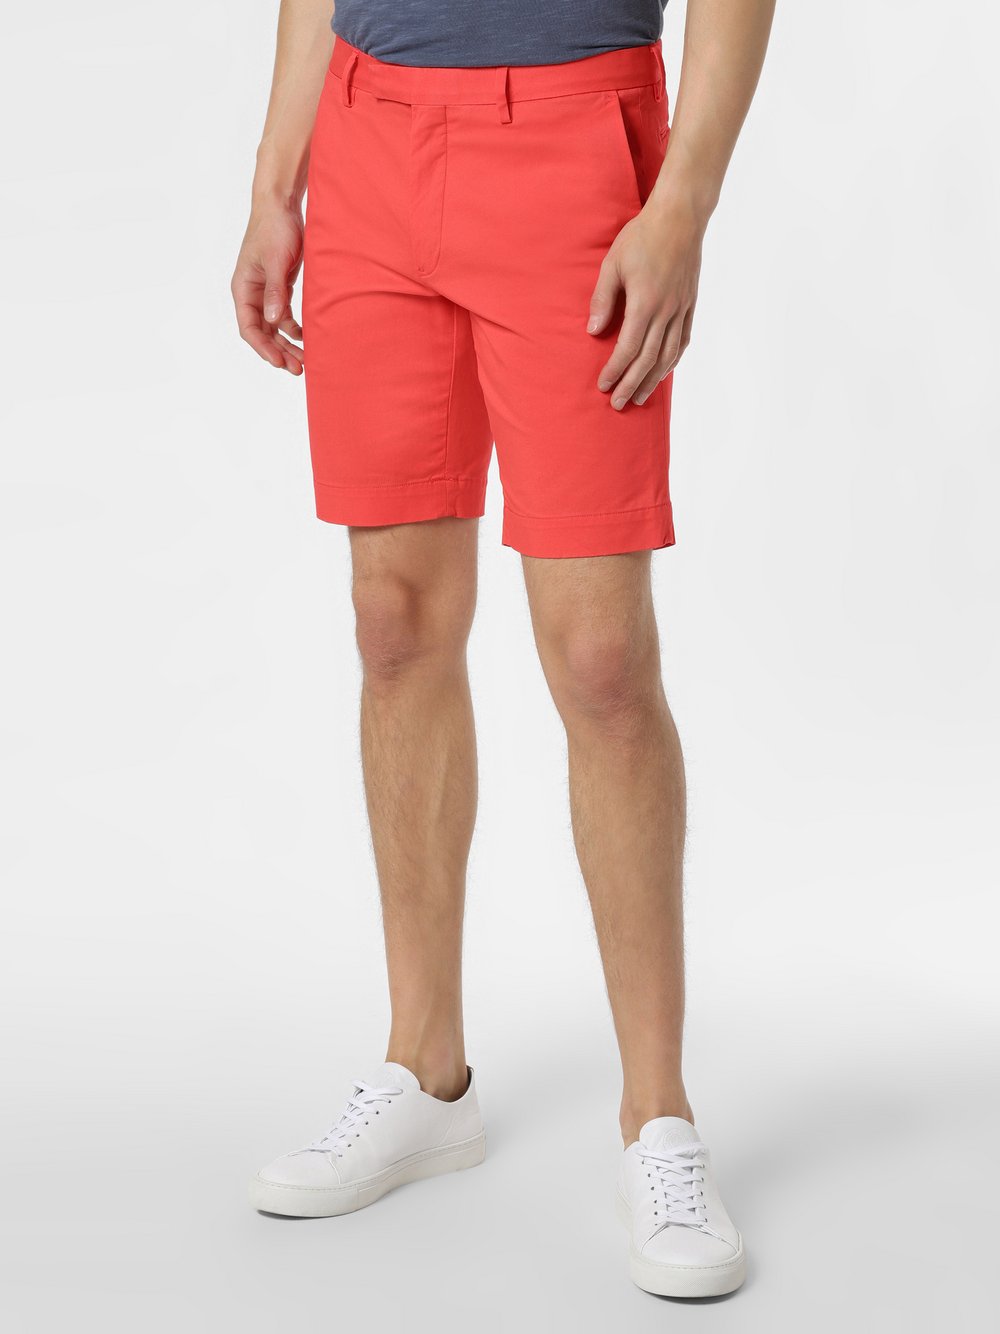 Polo Ralph Lauren - Spodenki męskie – Slim Fit, czerwony